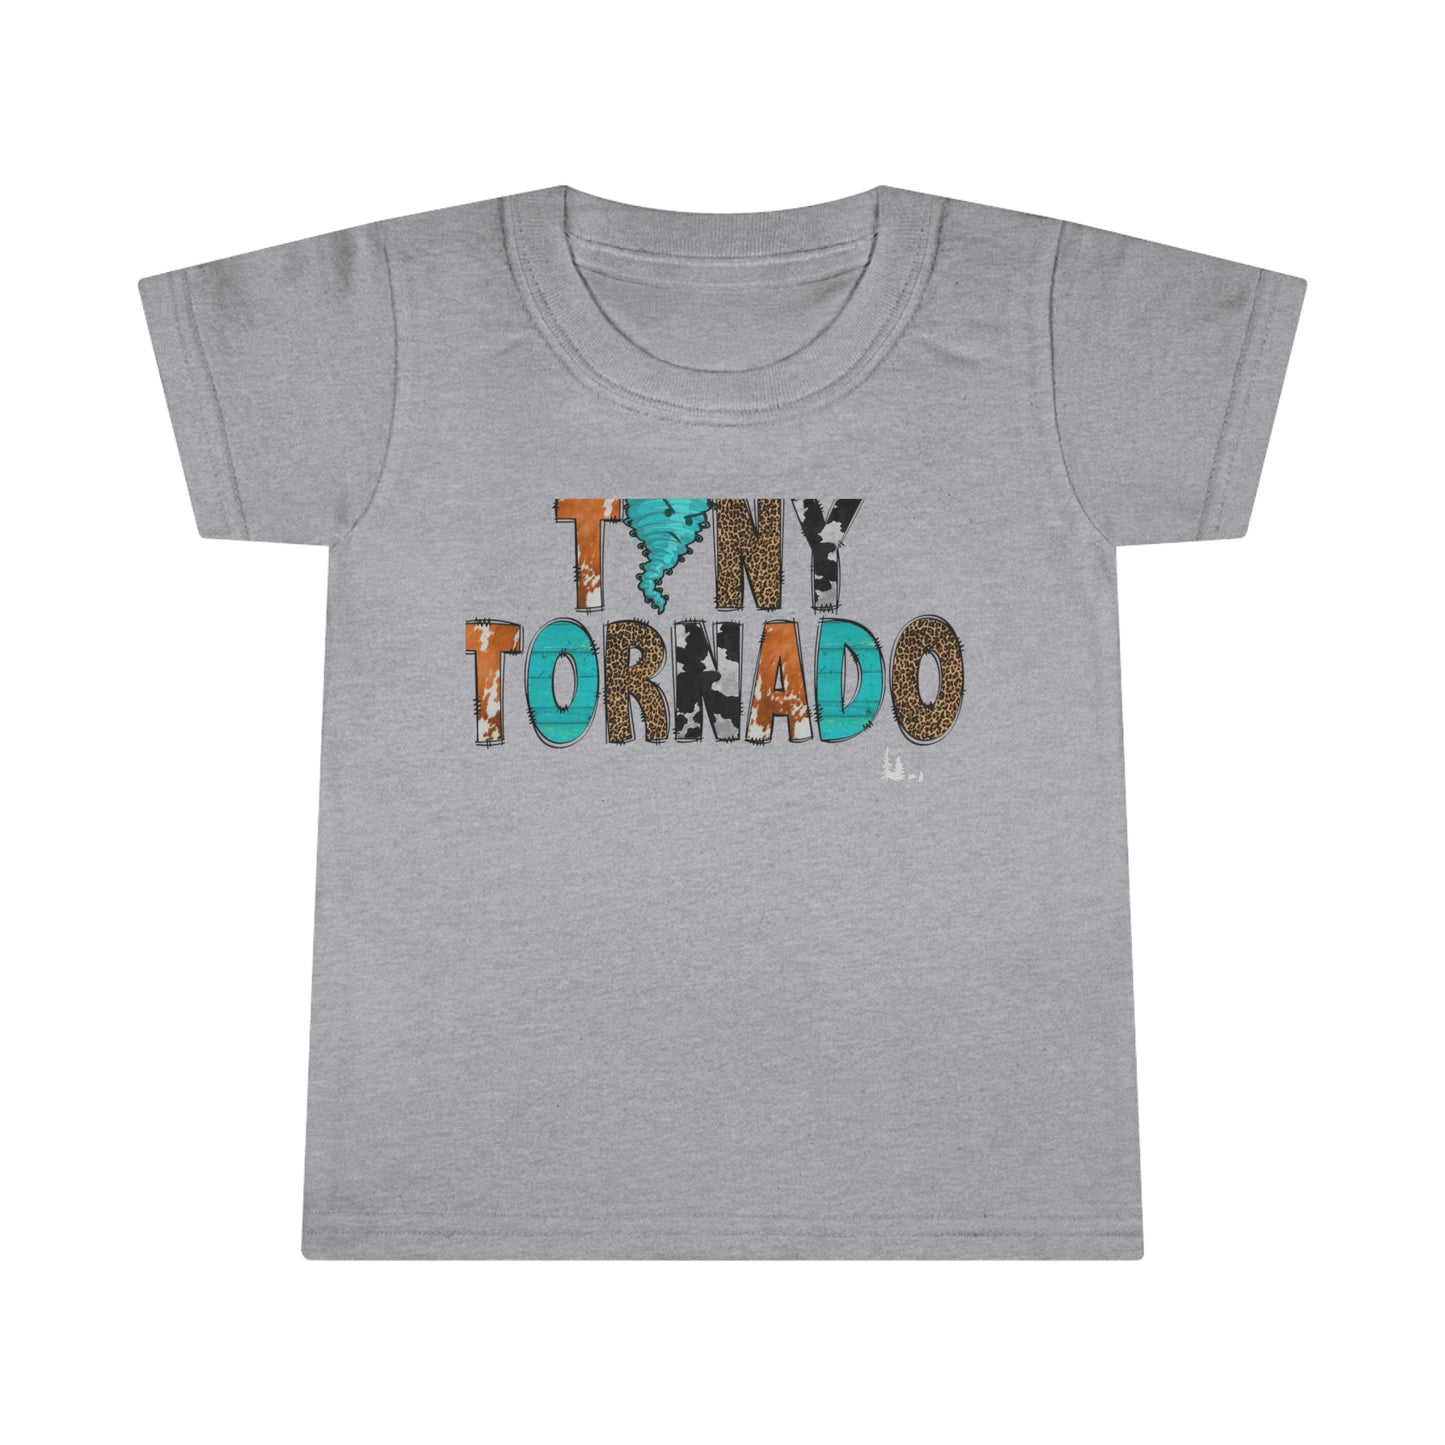 Tiny Little Tornado Serape Teal Leopard Print Cow Hide Toddler T-shirt